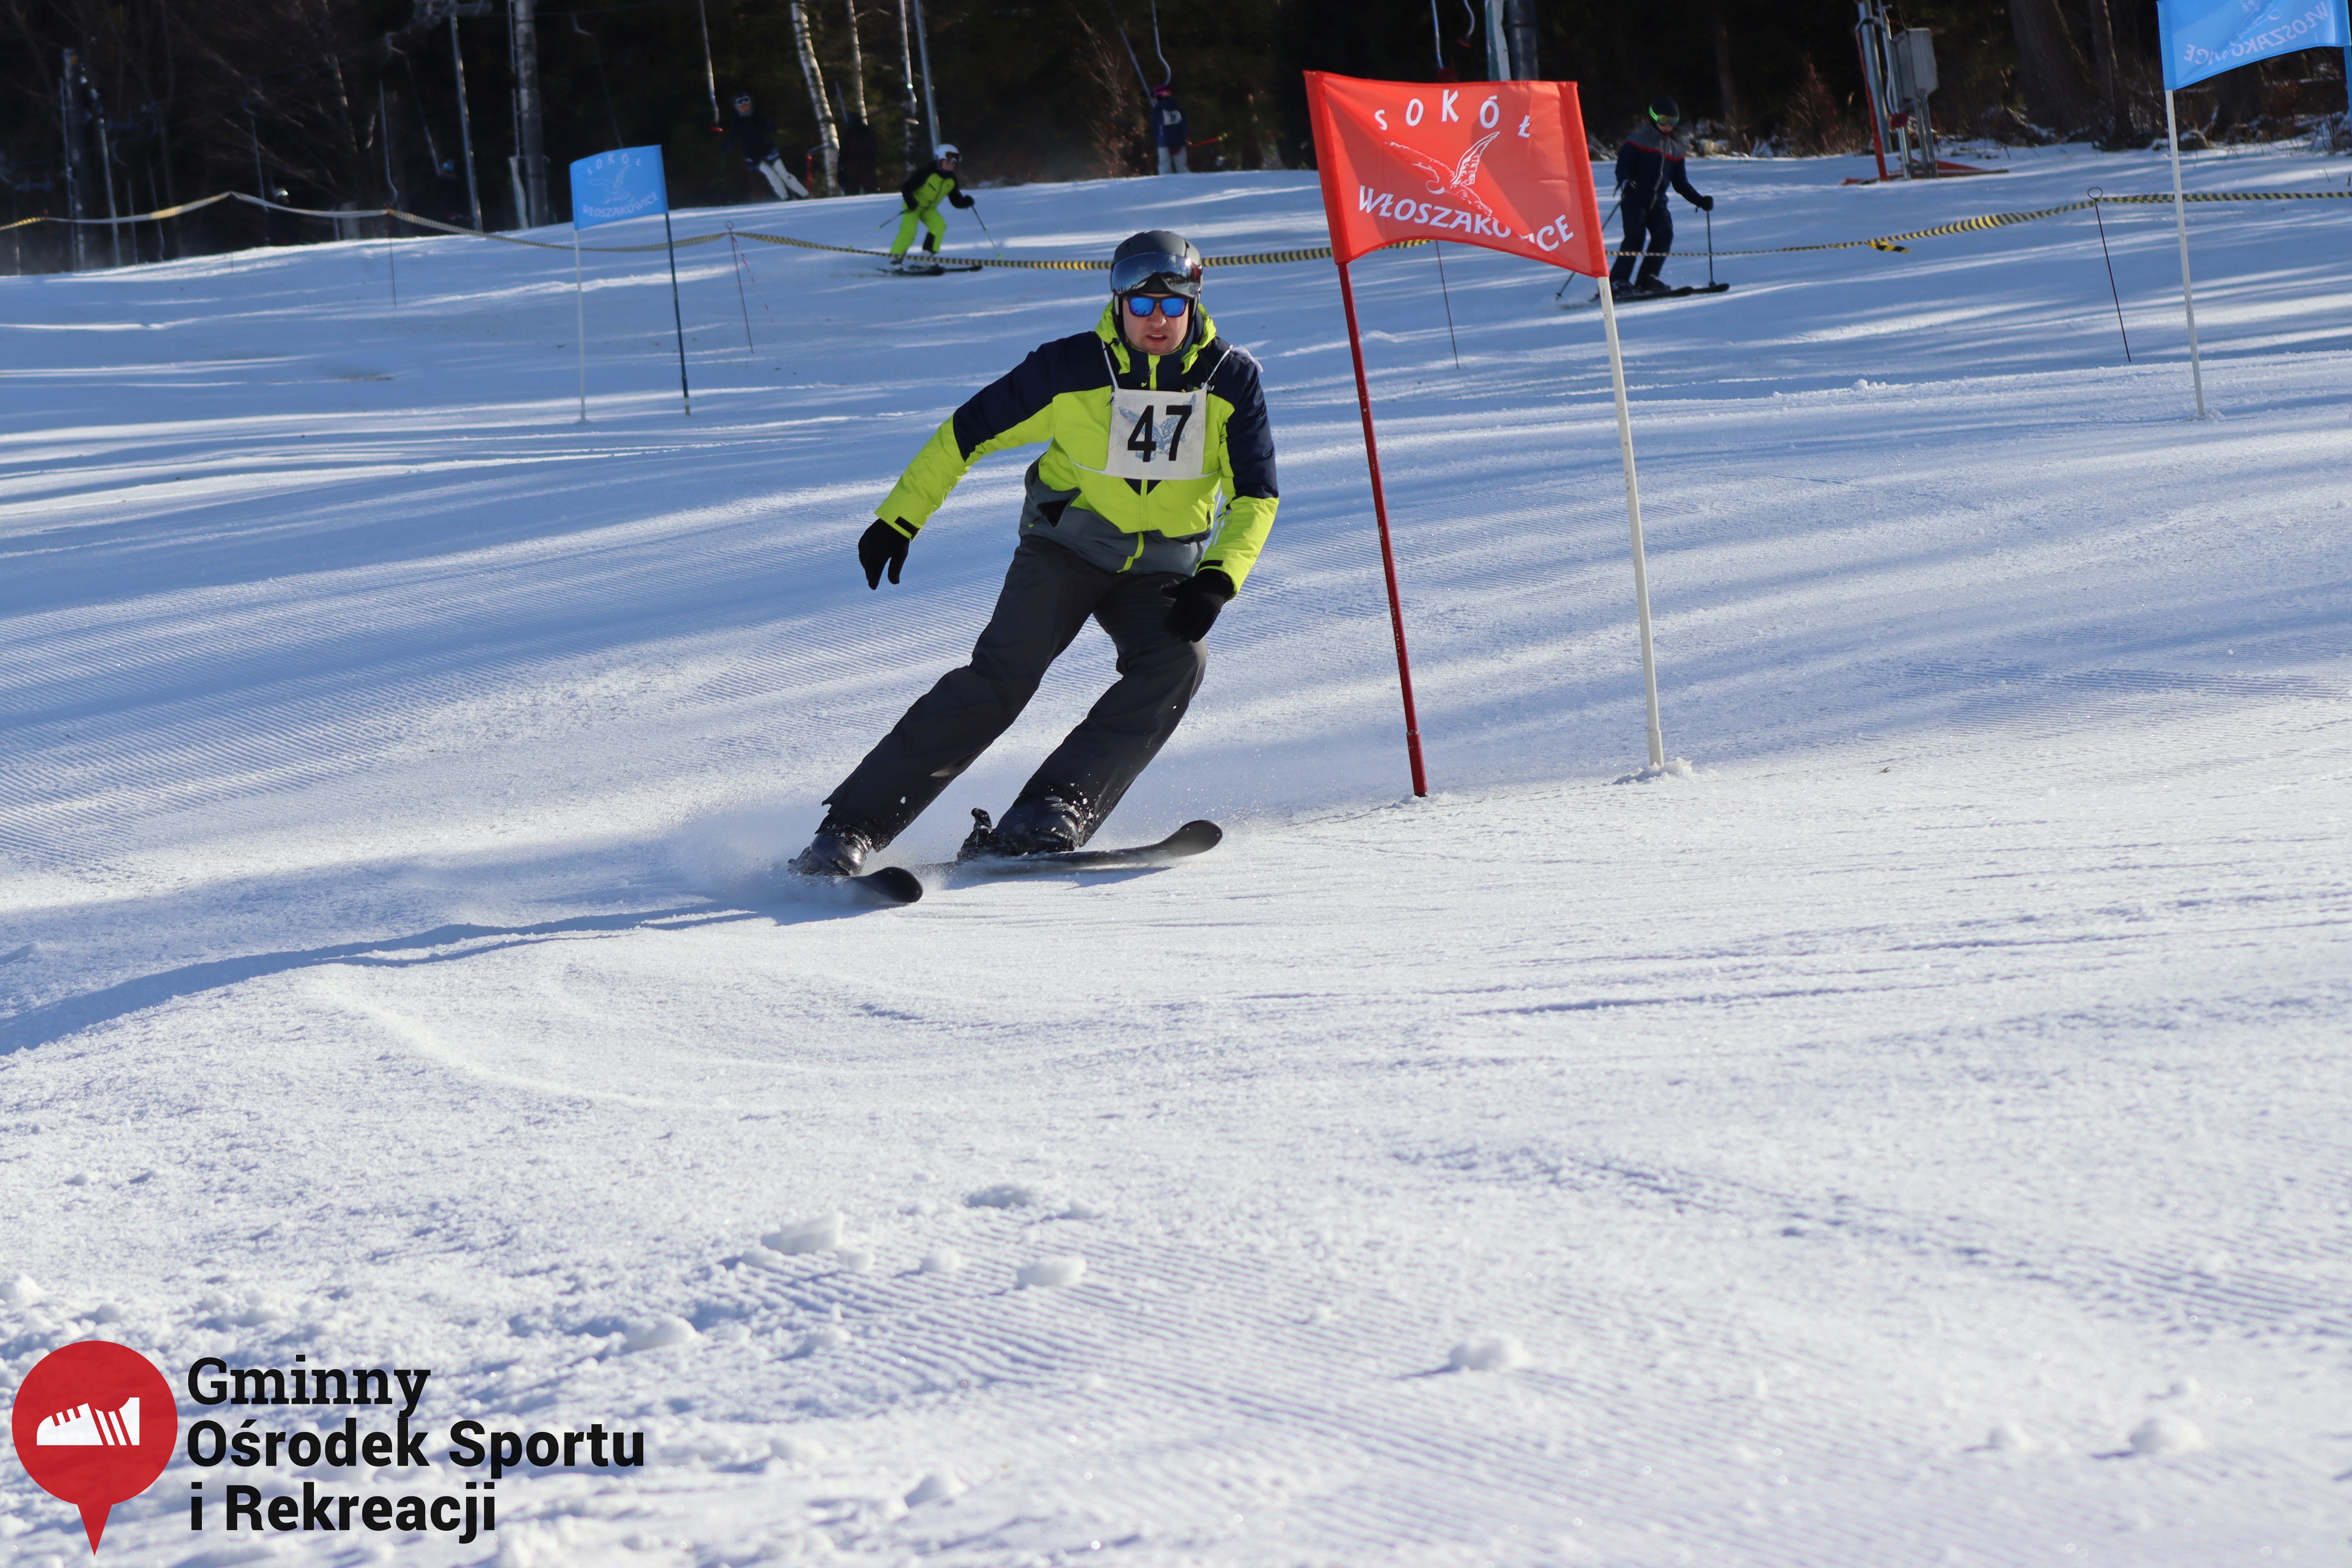 2022.02.12 - 18. Mistrzostwa Gminy Woszakowice w narciarstwie068.jpg - 2,38 MB